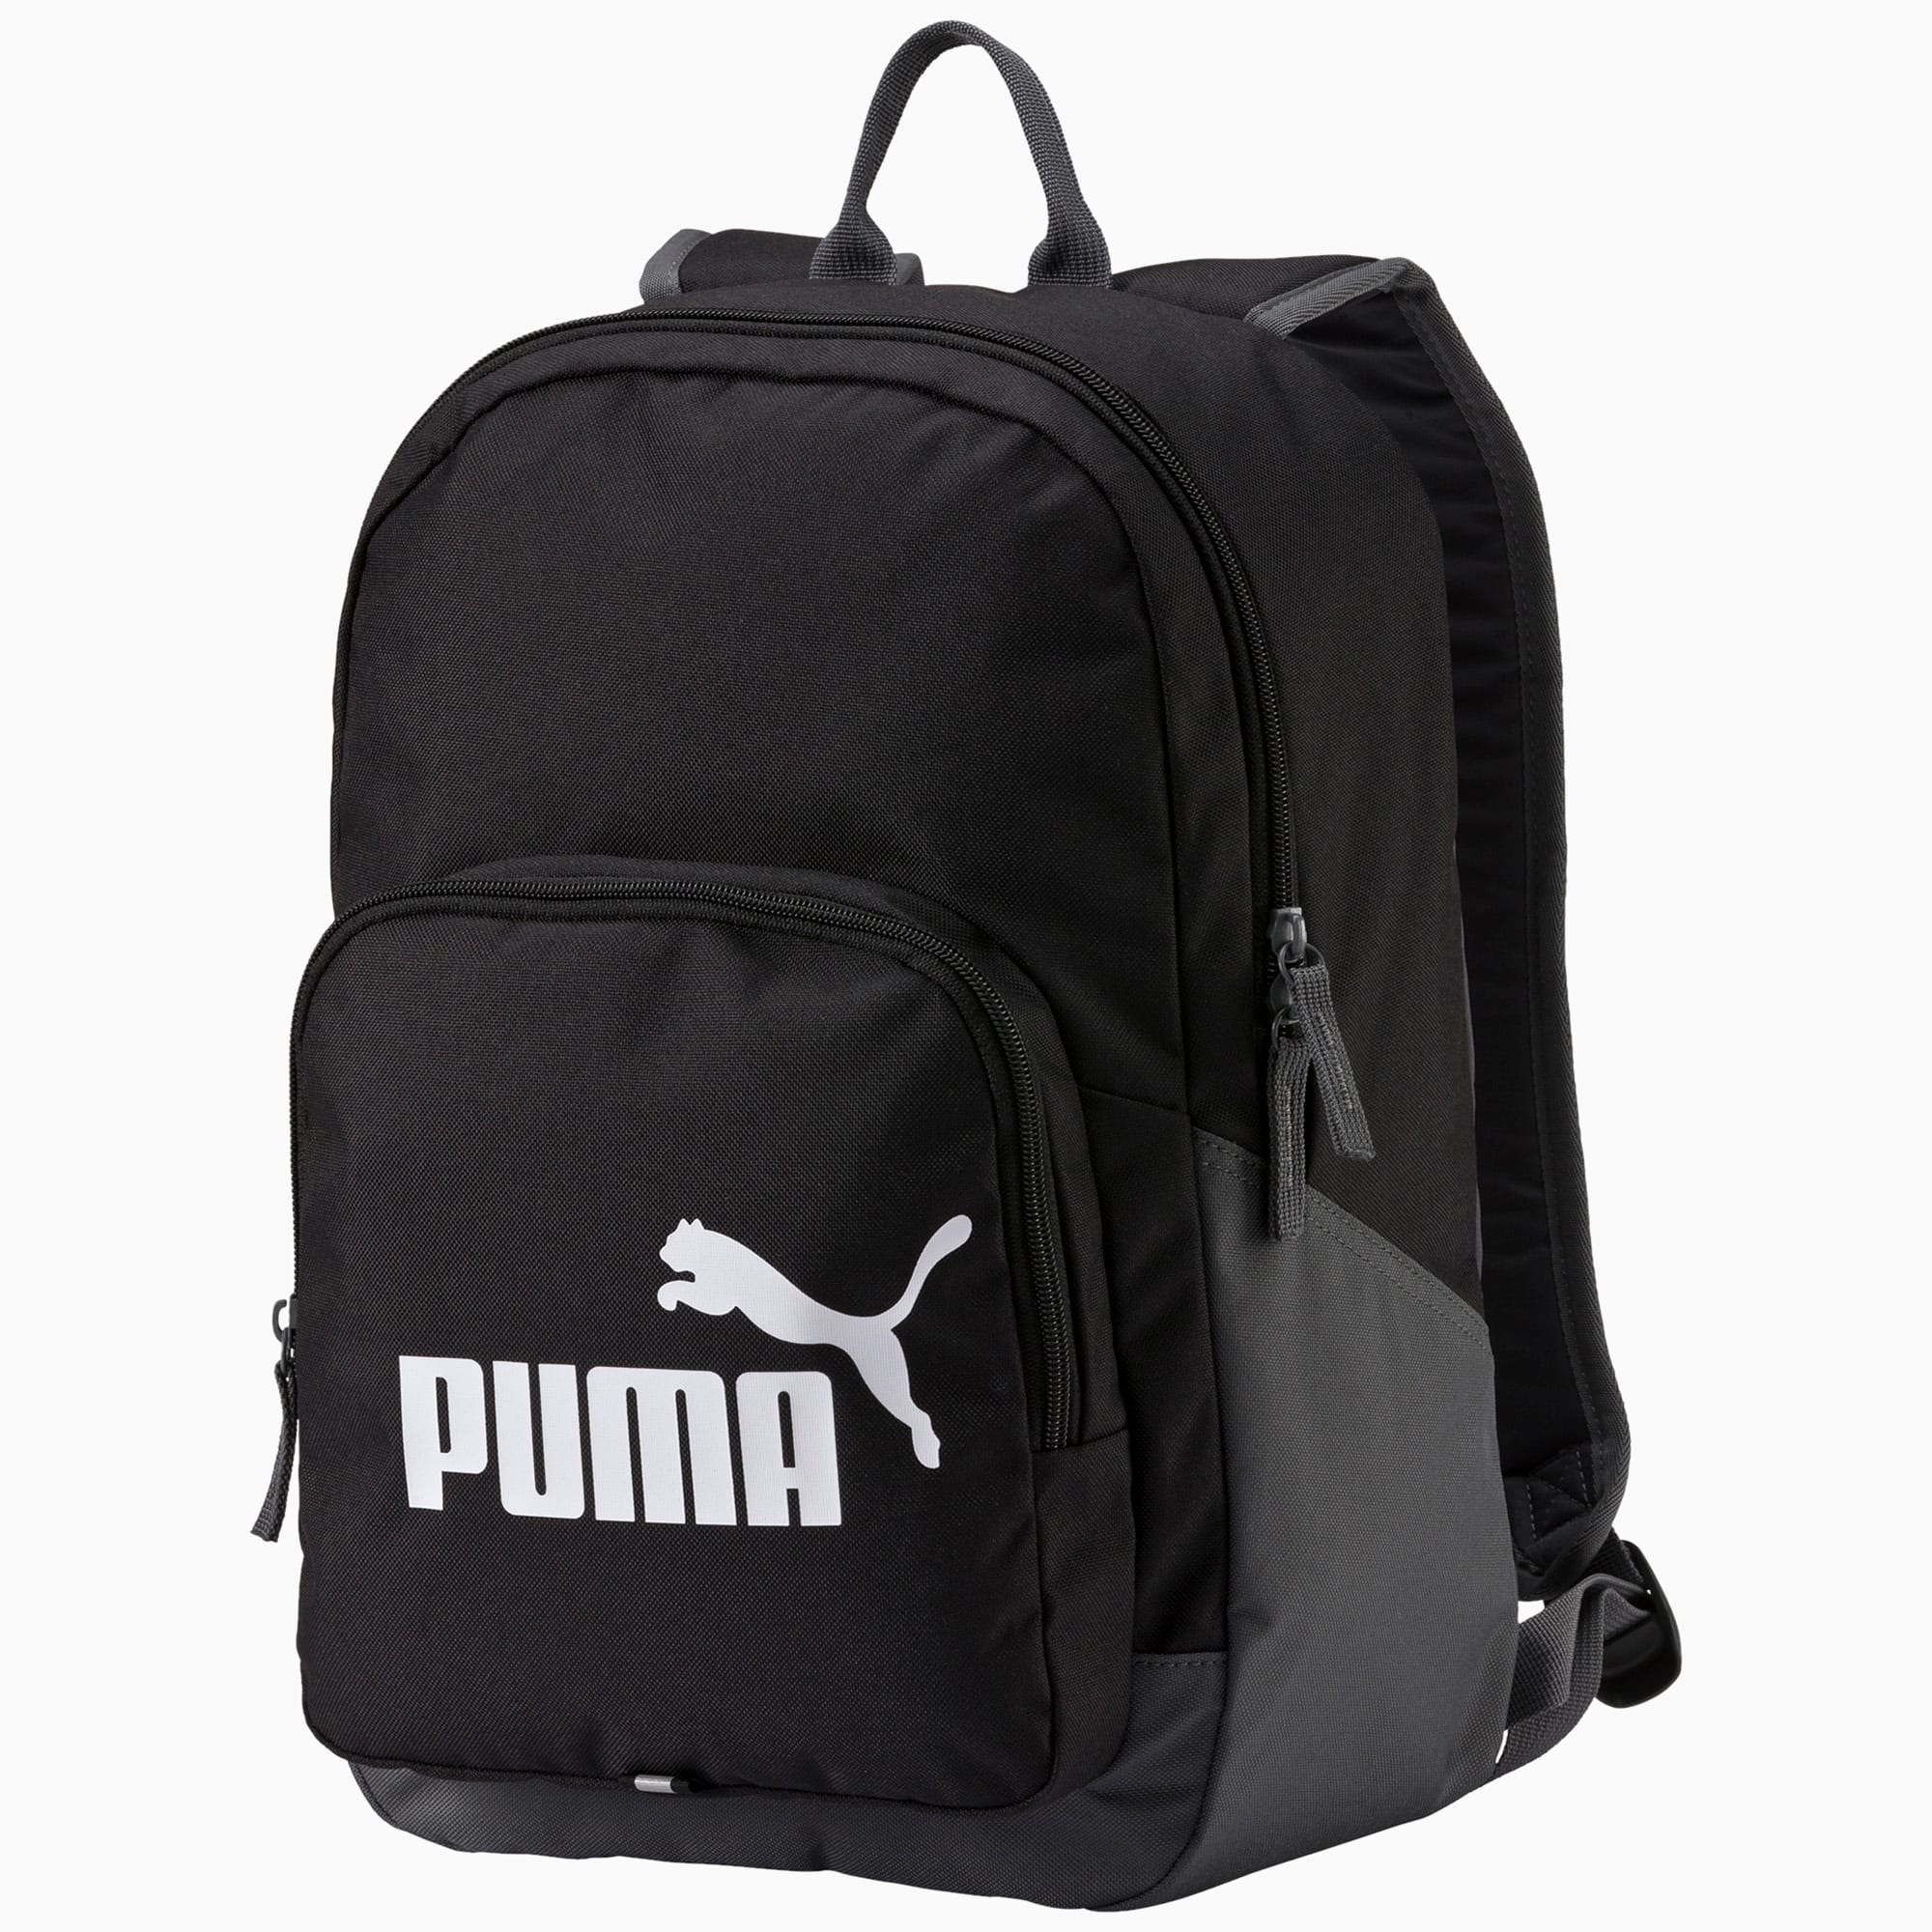 puma grey backpack